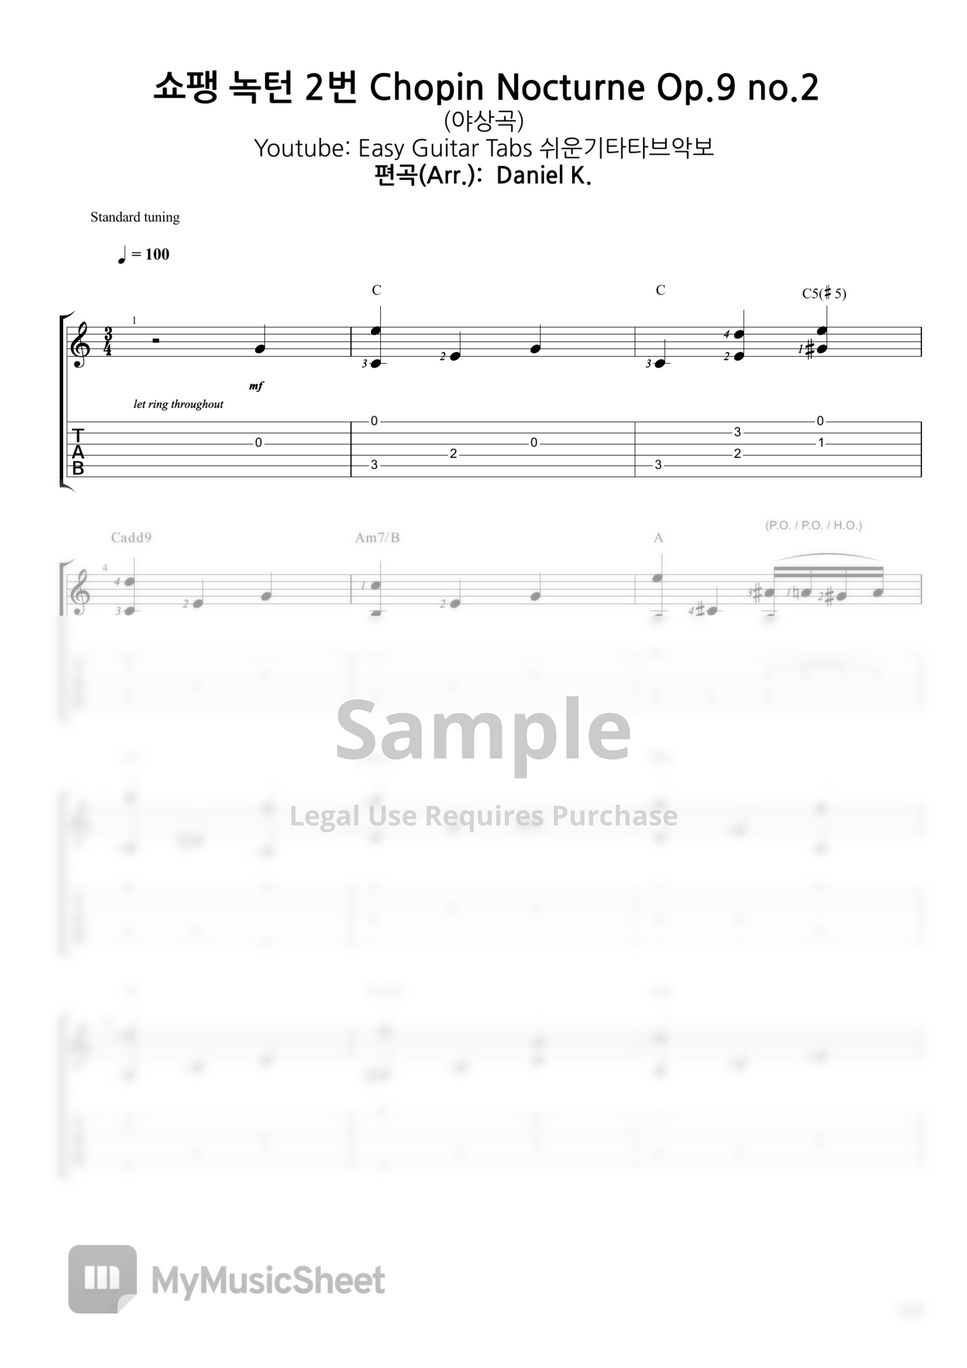 쉬운기타타브악보 - 쇼팽 녹턴 2번 야상곡 Chopin Nocturne Op.9 no.2 by Daniel K.